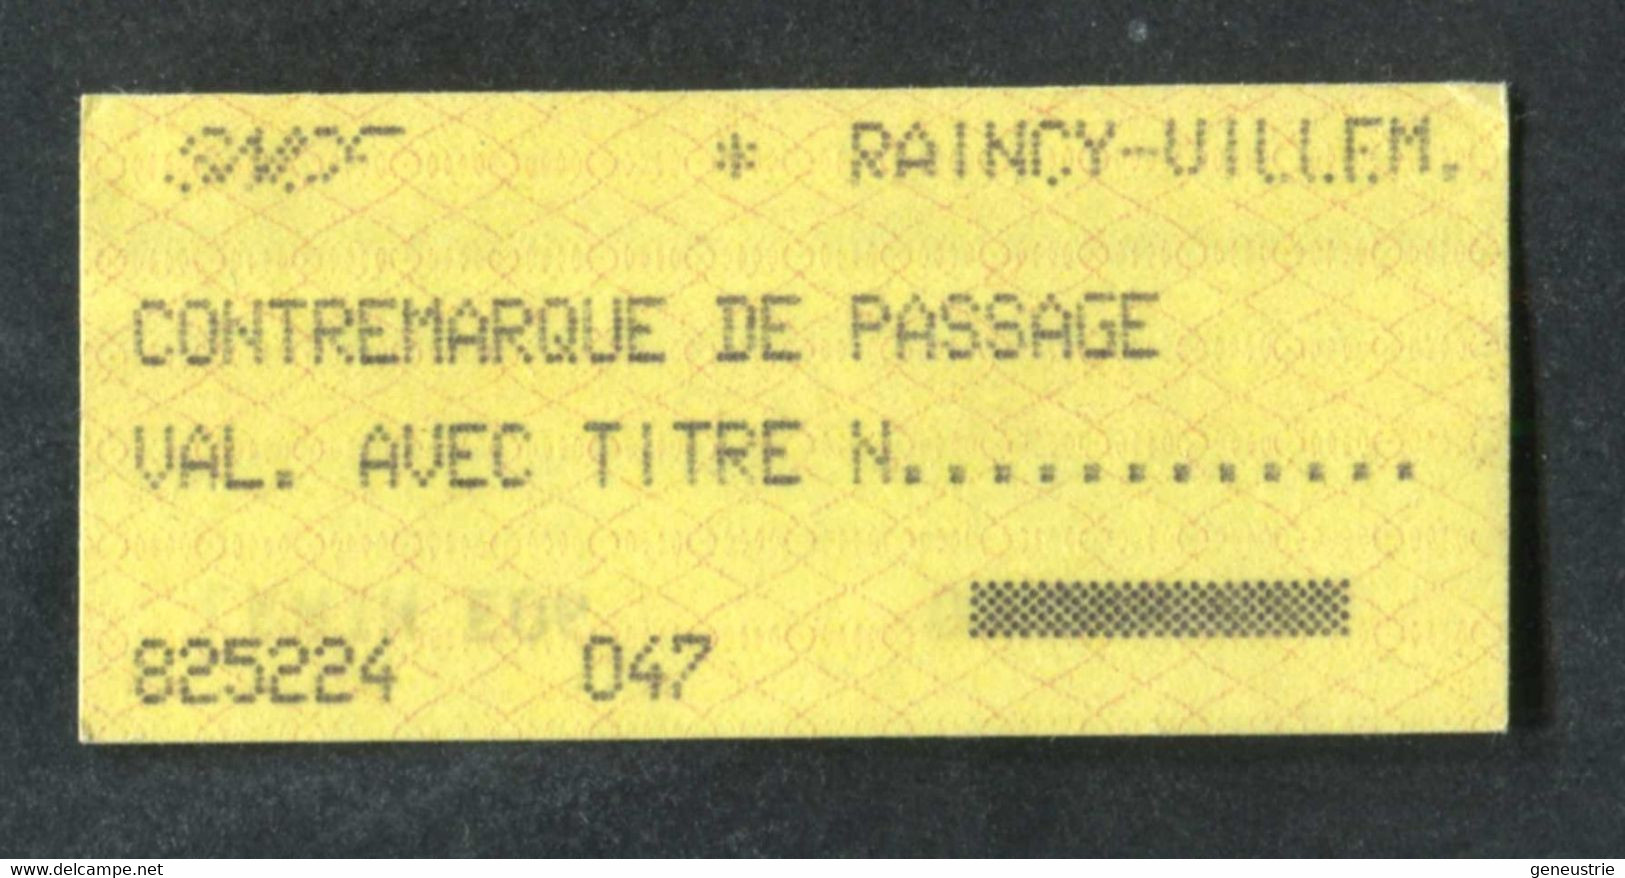 Ticket De Train SNCF Gare De Le Raincy 1987 "Contremarque De Passage" Train Ticket - Europe